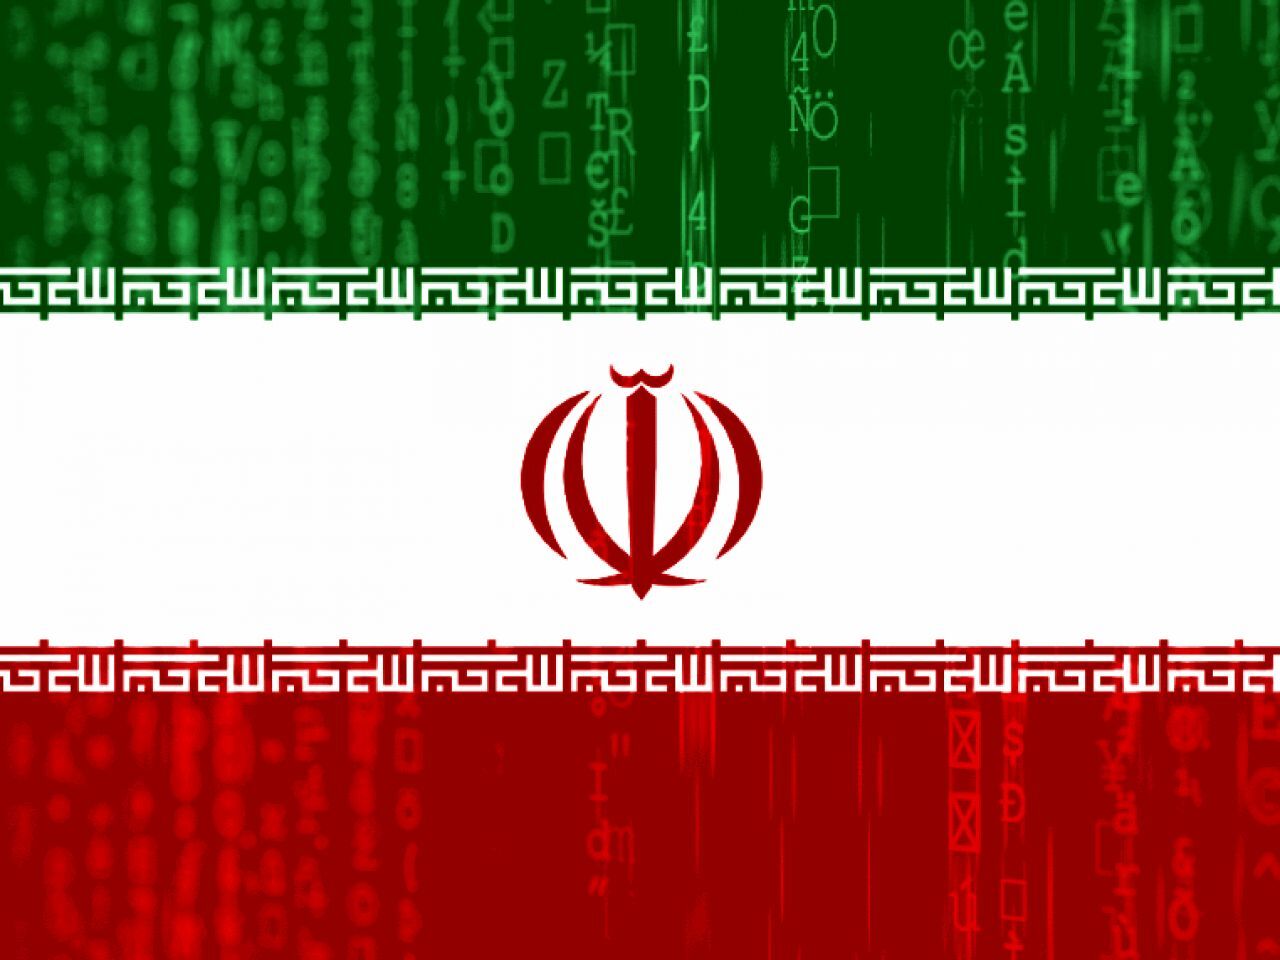 米サイバー軍、ハッカー集団「MuddyWater」とイラン諜報機関のつながり指摘